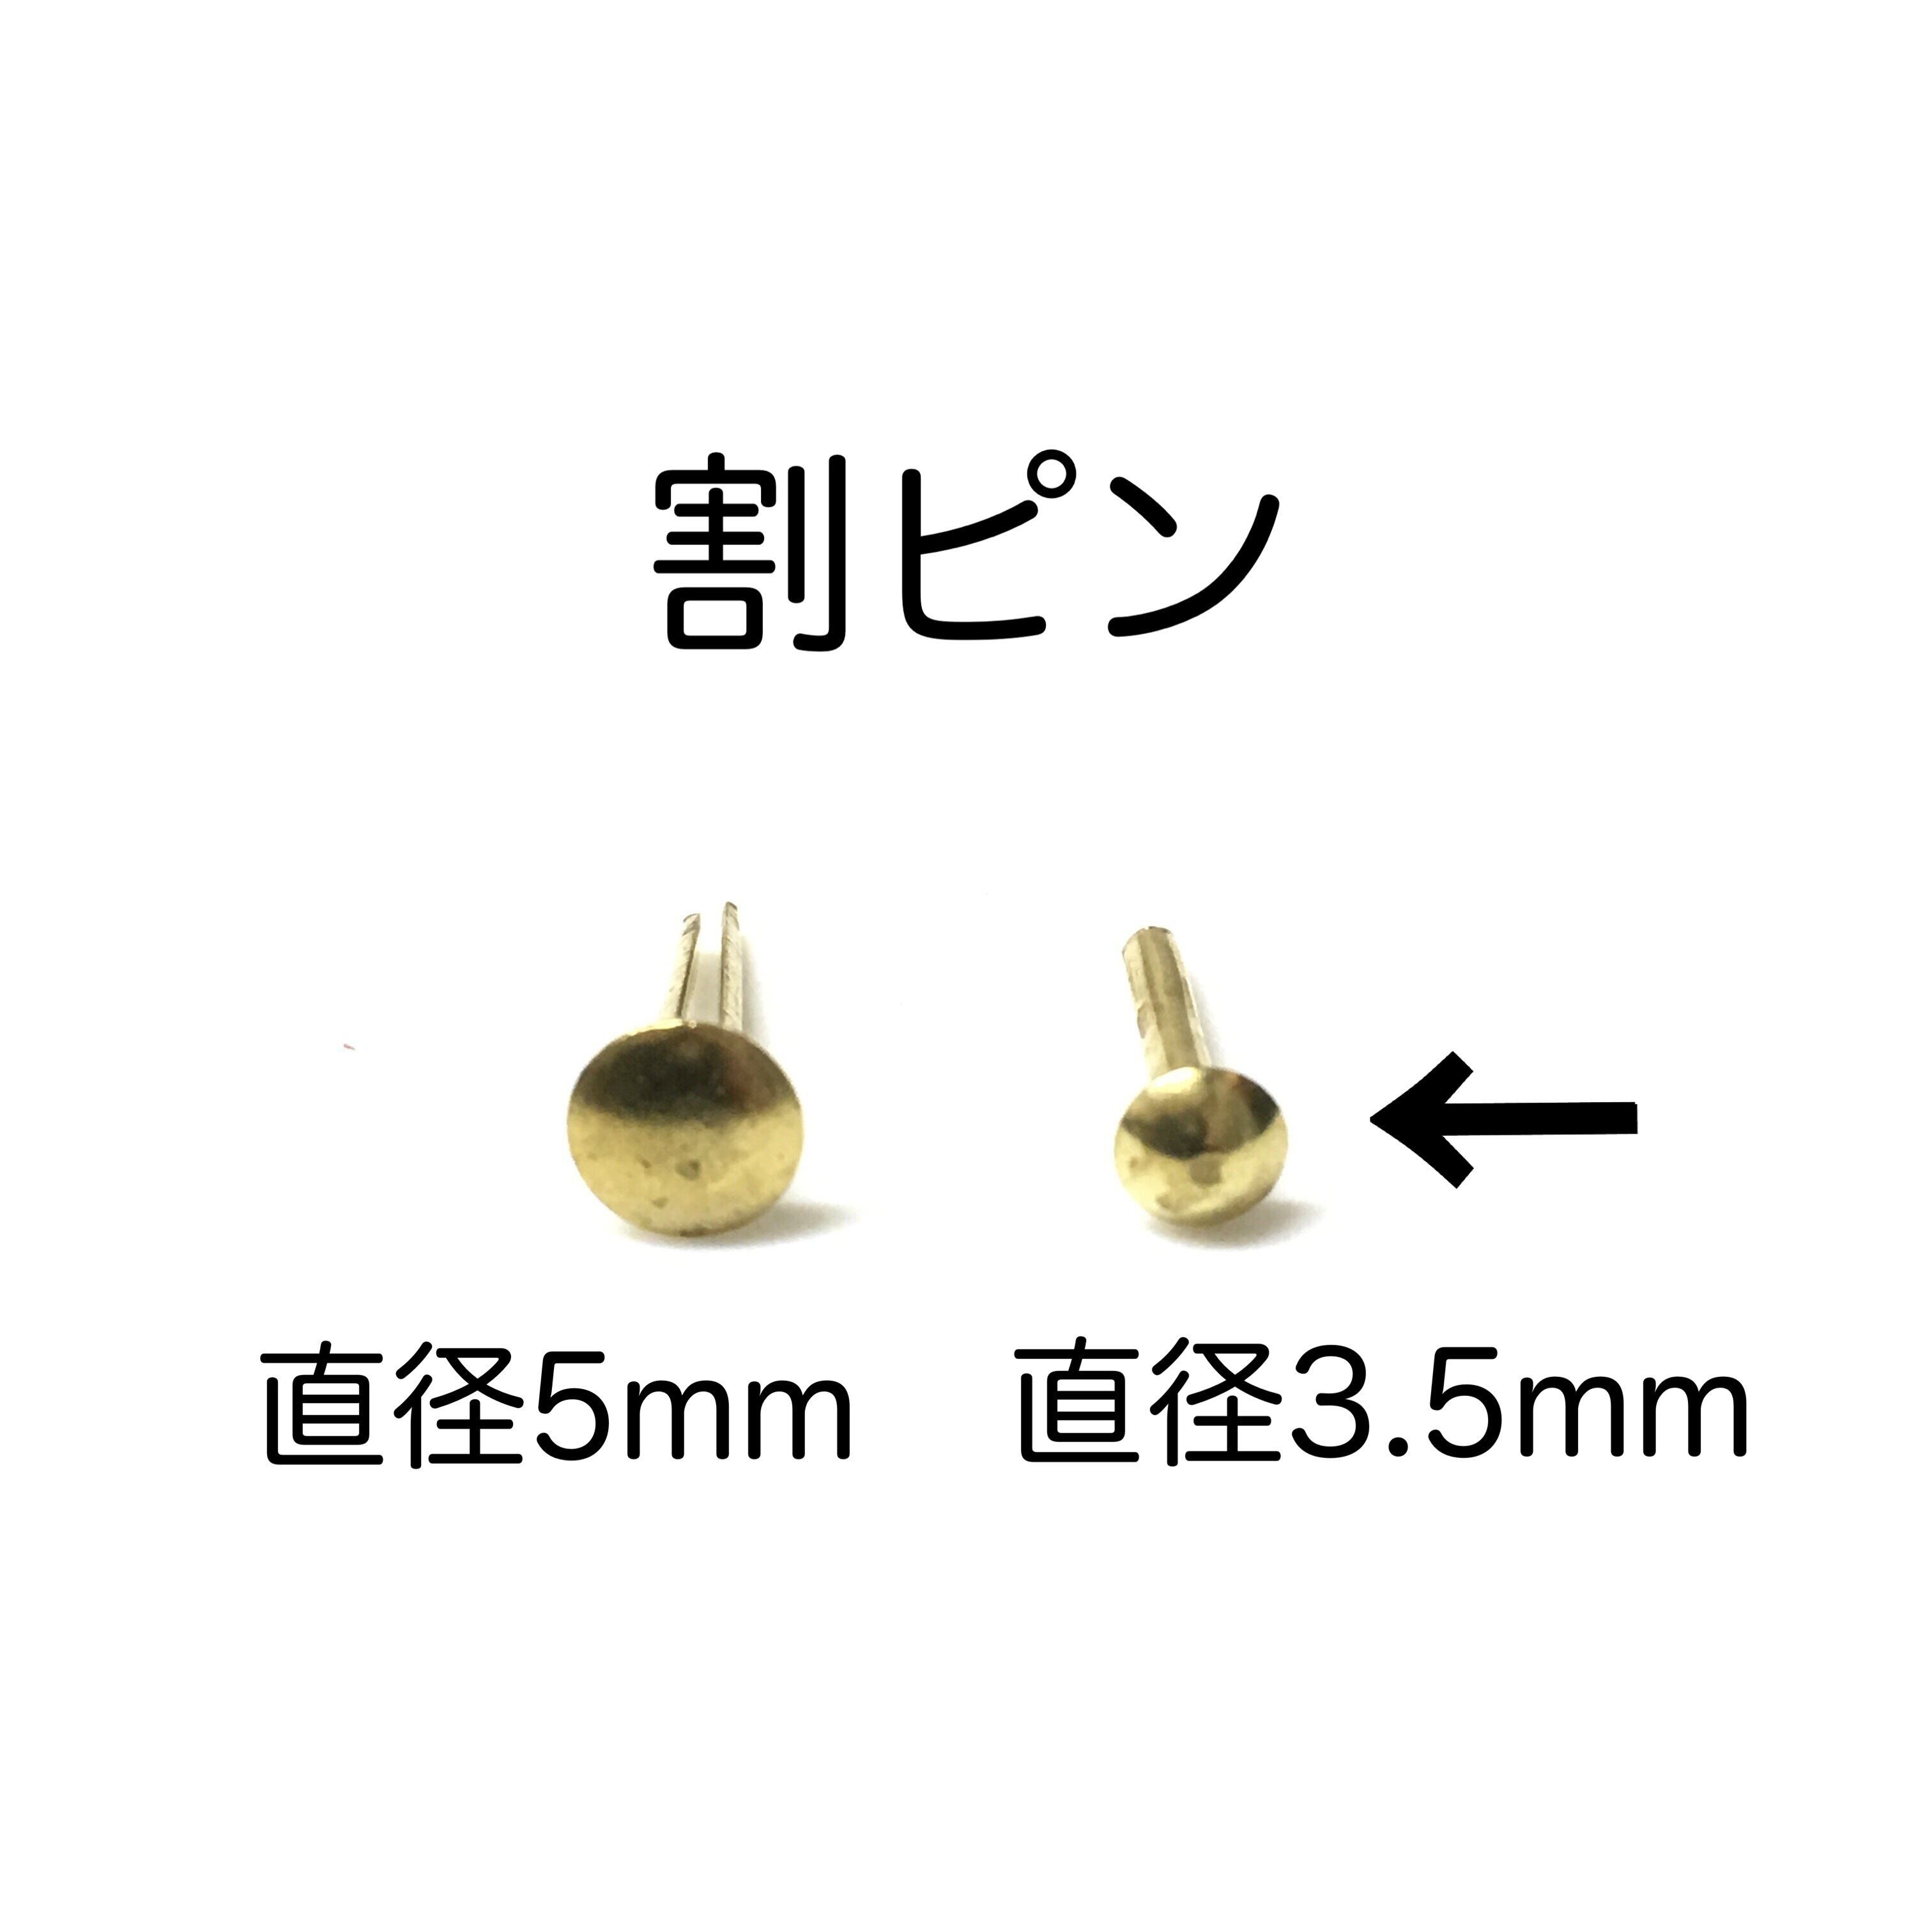 割ピン【1000個】BSワリピン X 45 黄銅/生地(または標準) 金物、部品